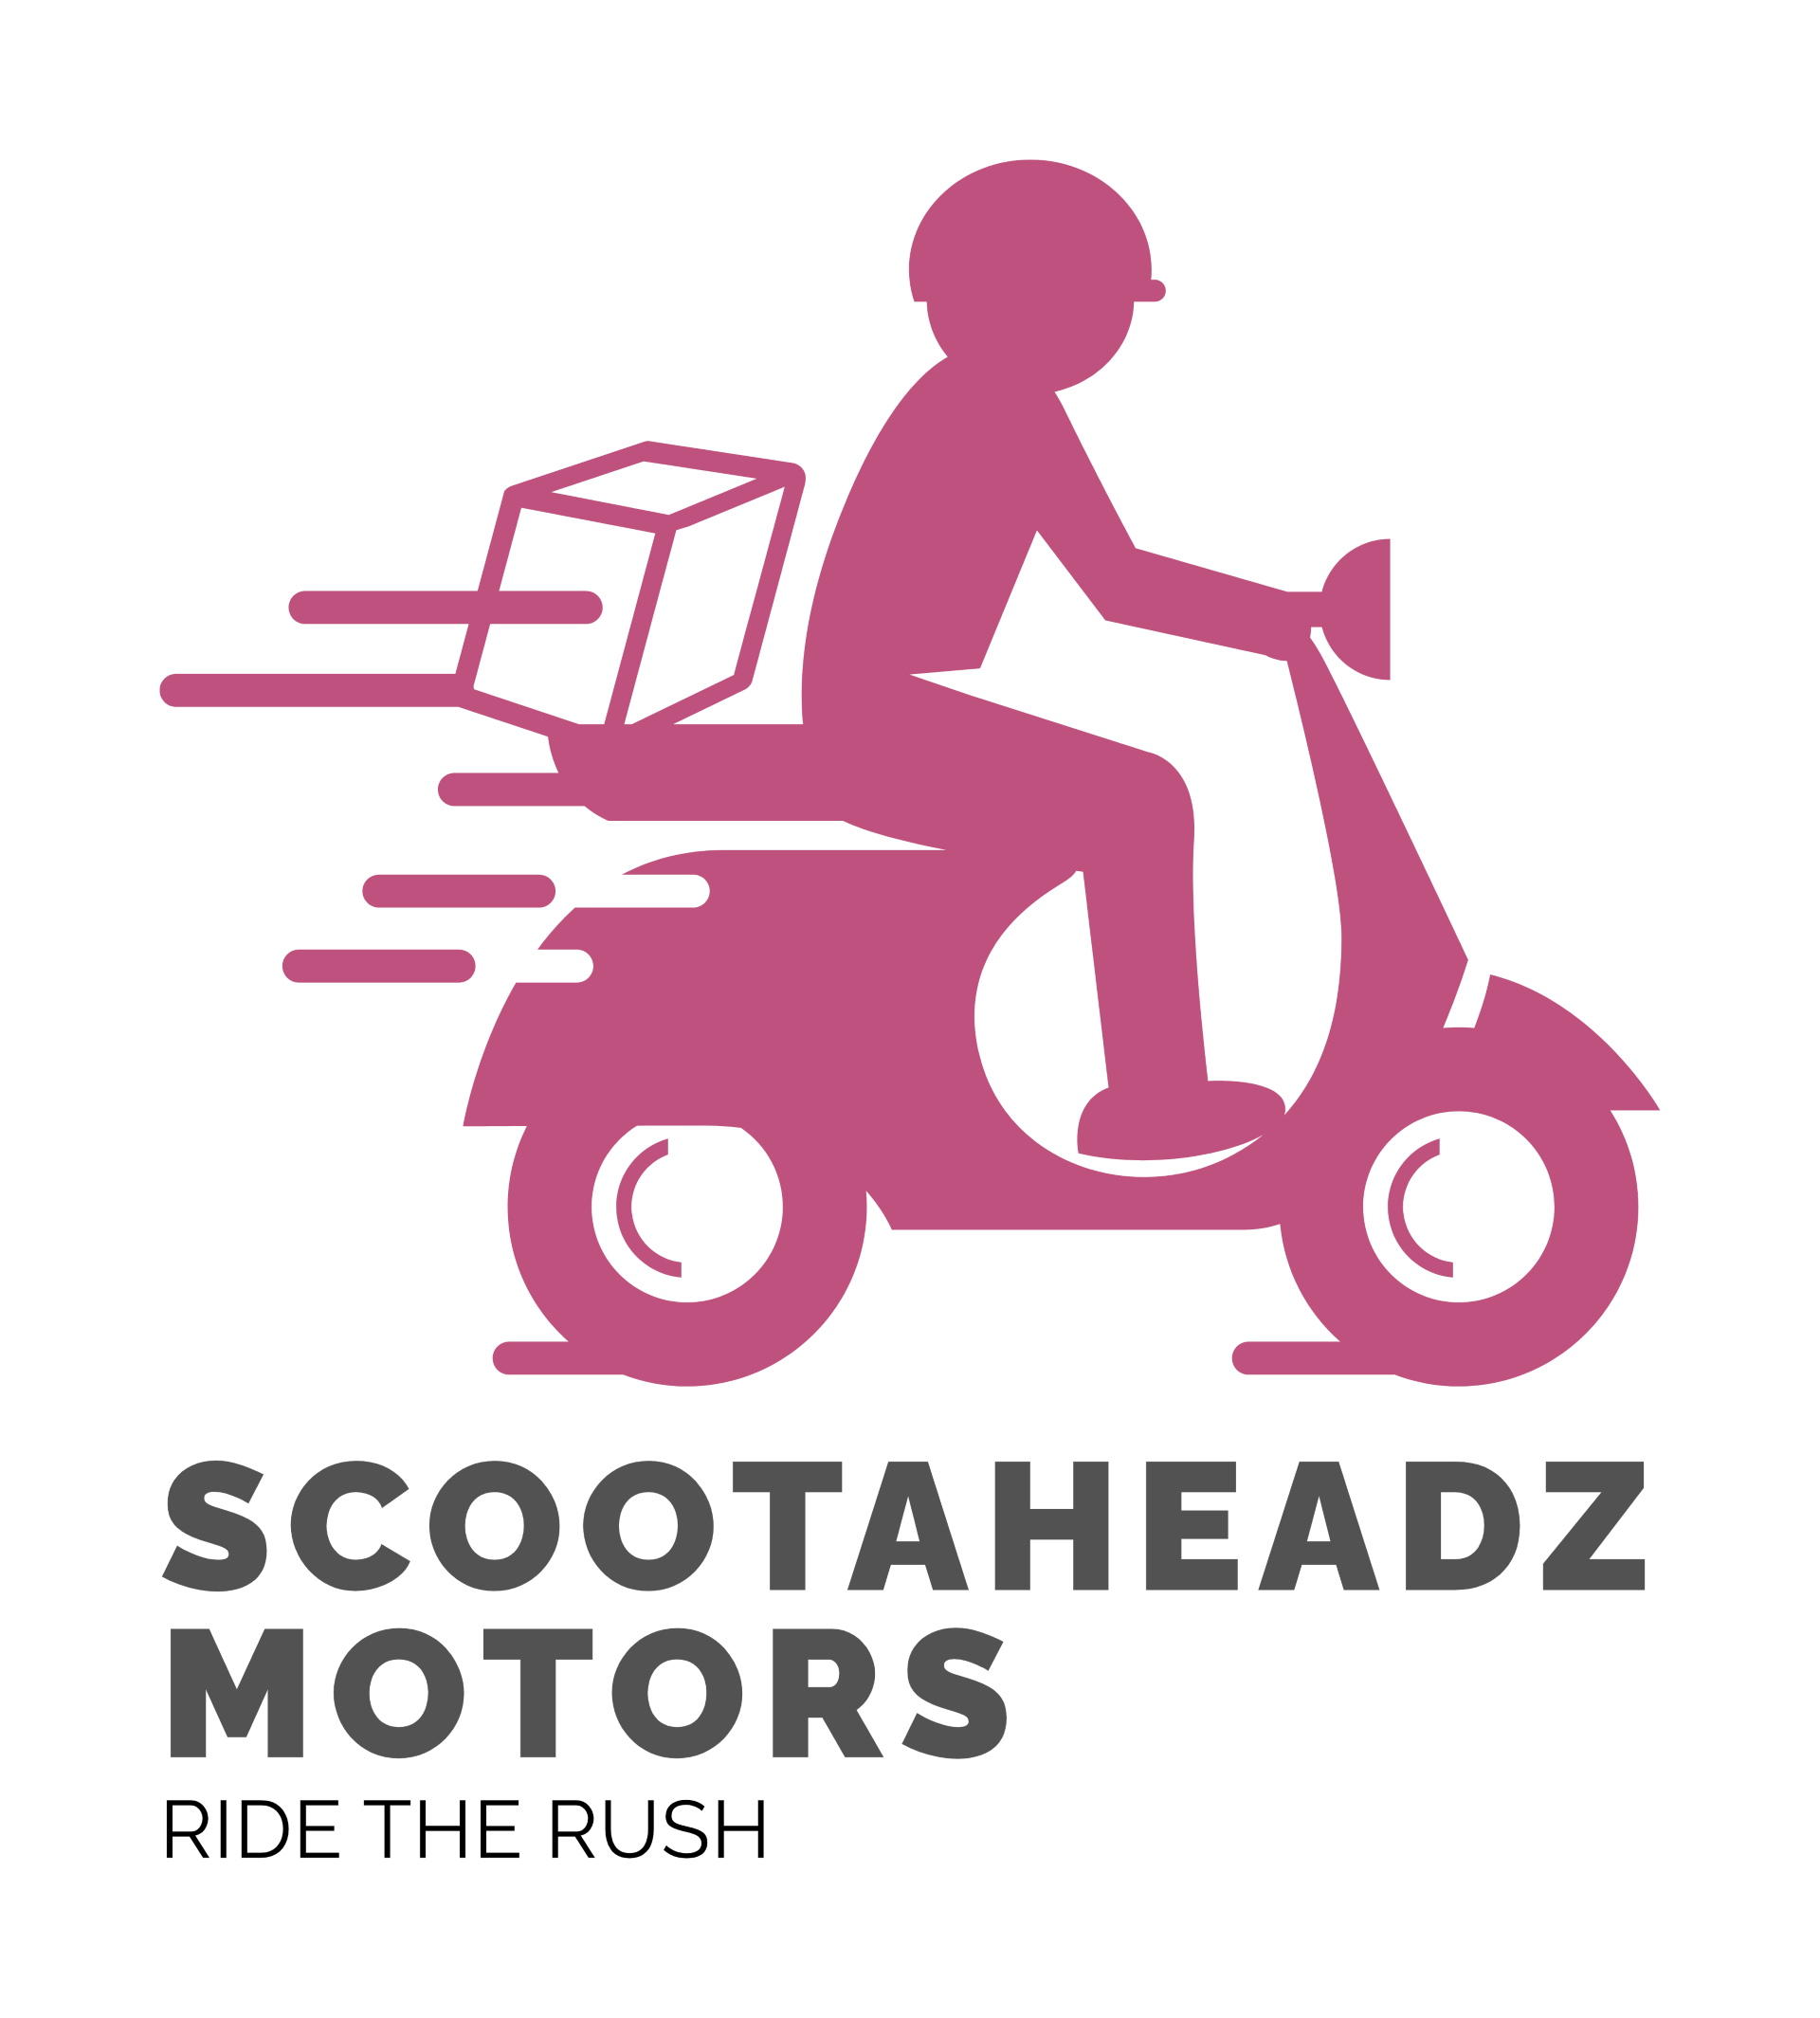 ScootaHeadz Motors